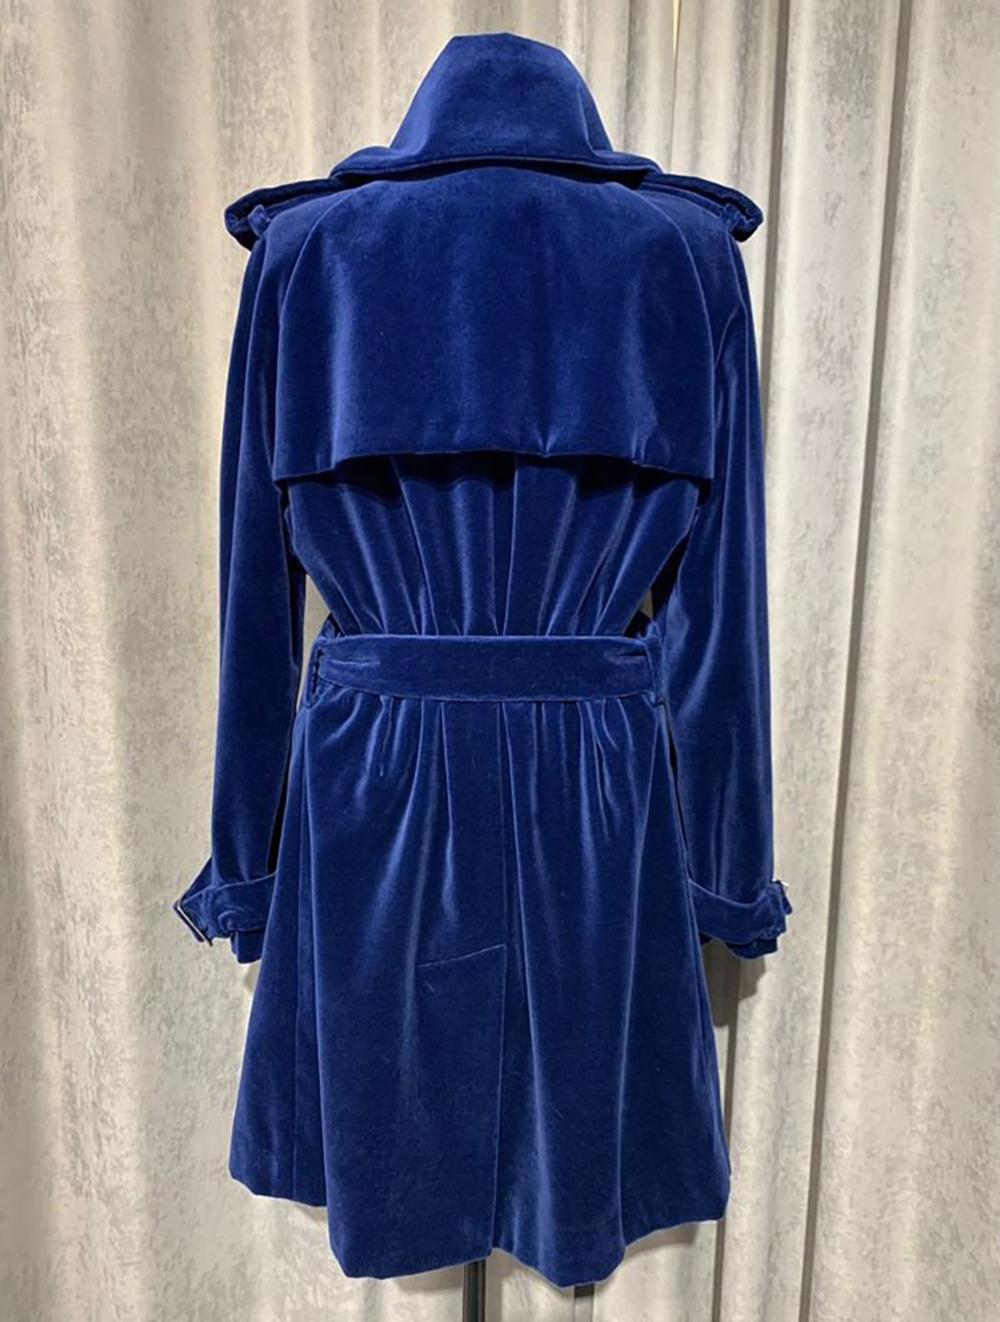 Women's or Men's Chanel Super Rare Velvet Trench Coat in Royal Blue